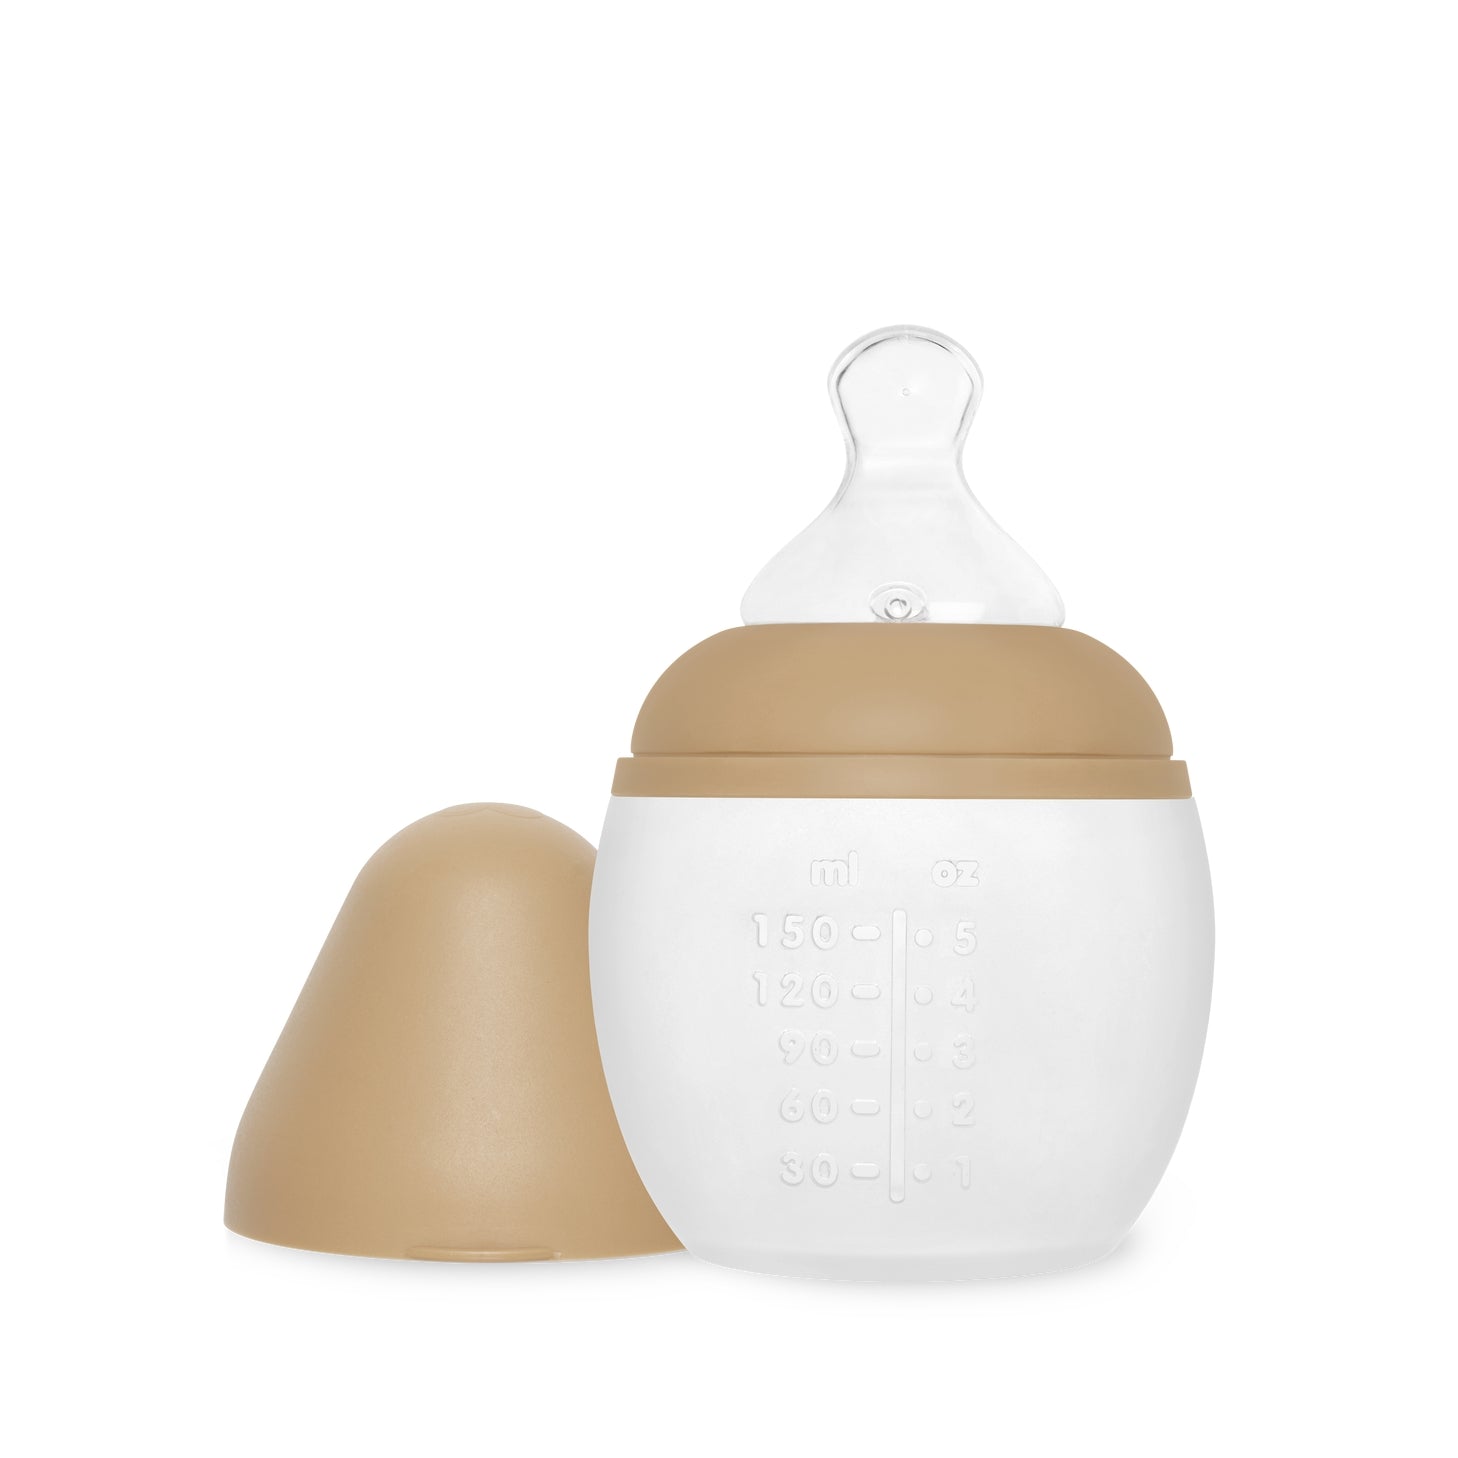 婴儿奶瓶 150ml - 05 盎司